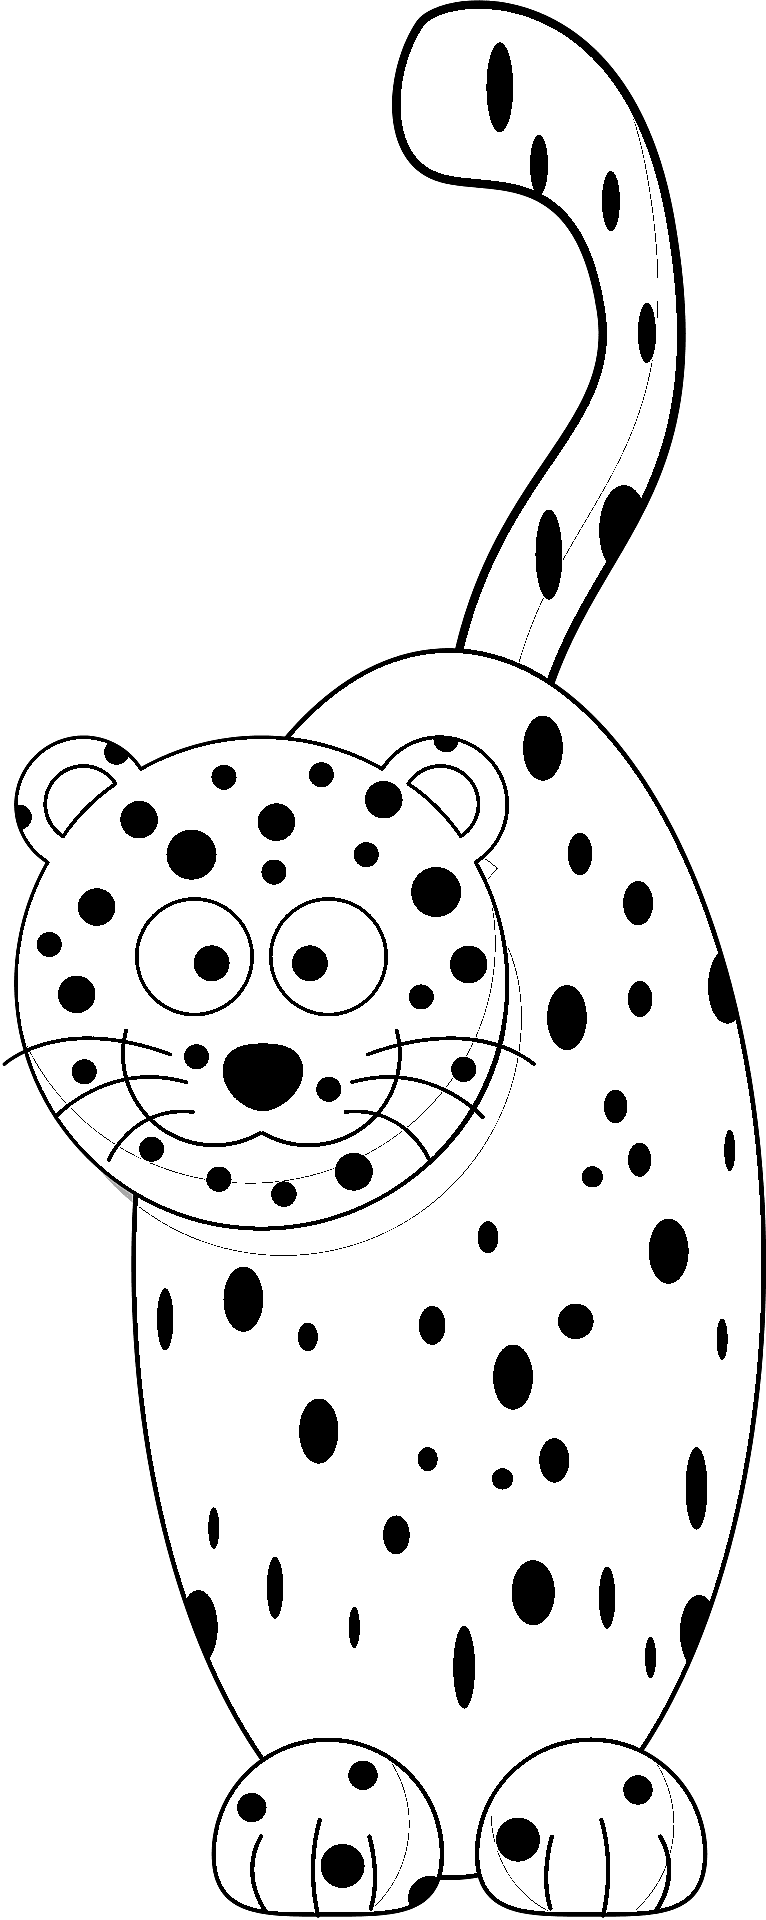 Disegno da colorare di un ghepardo